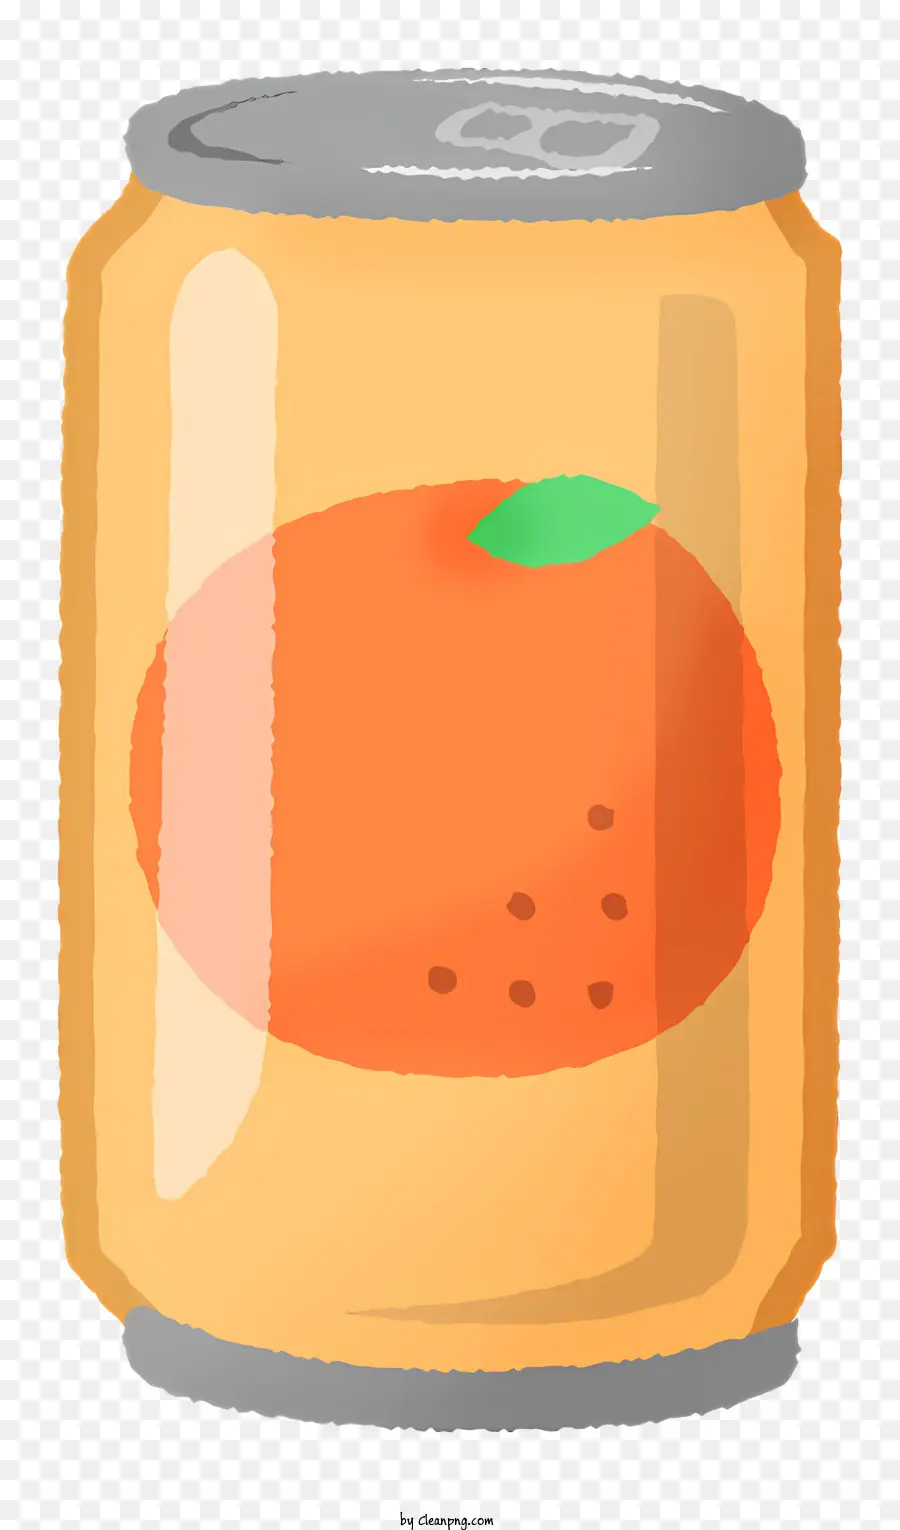 icon orange juice canned orange juice nonalcoholic beverage citrus fruits